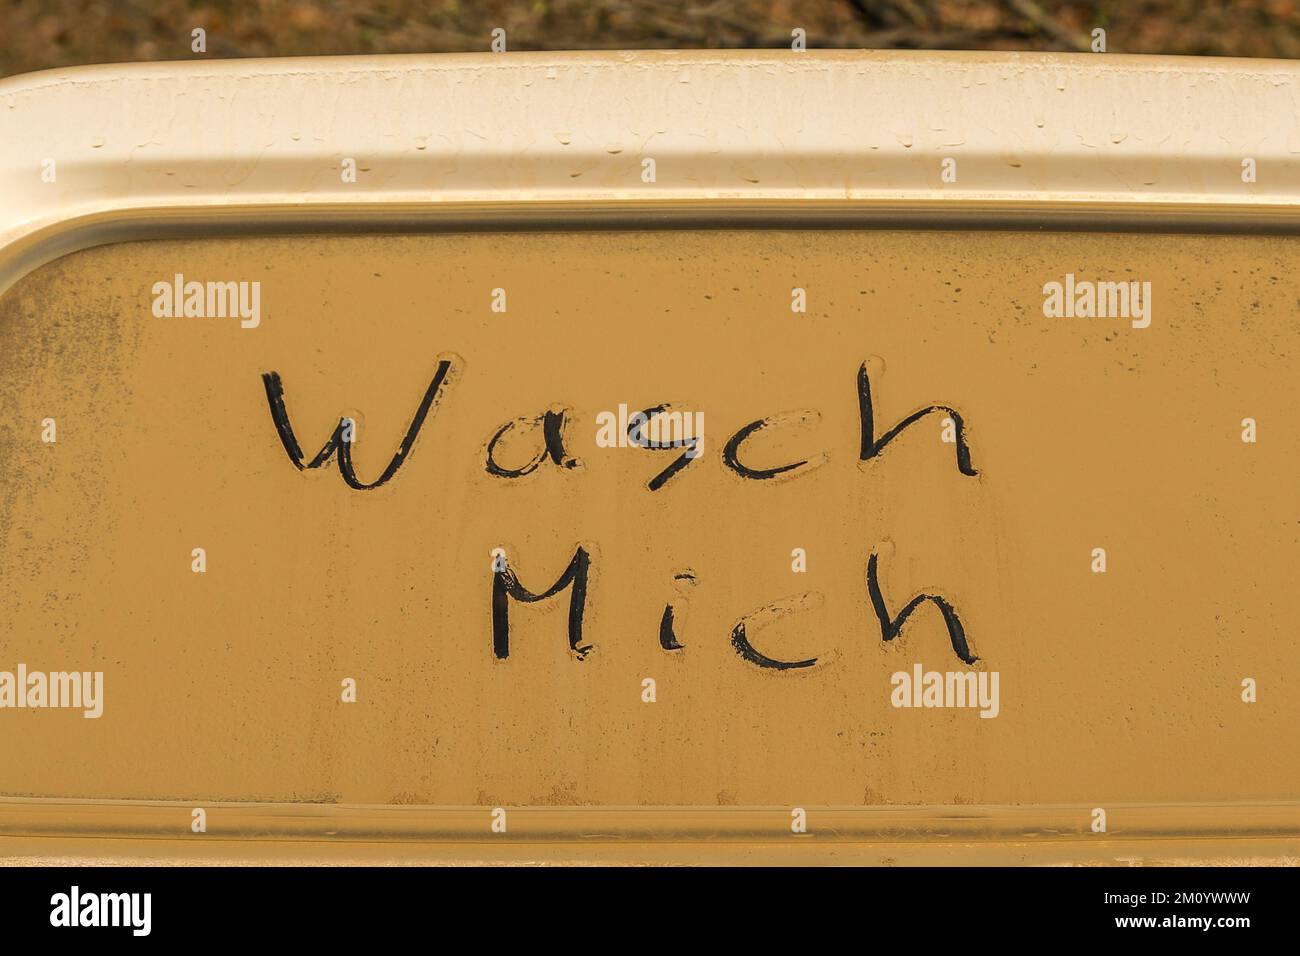 Die deutschen Wörter 'wasch mich' (Wasch mich) stehen auf einem dreckigen (orangefarbenen Sand) Fenster eines Autos Stockfoto